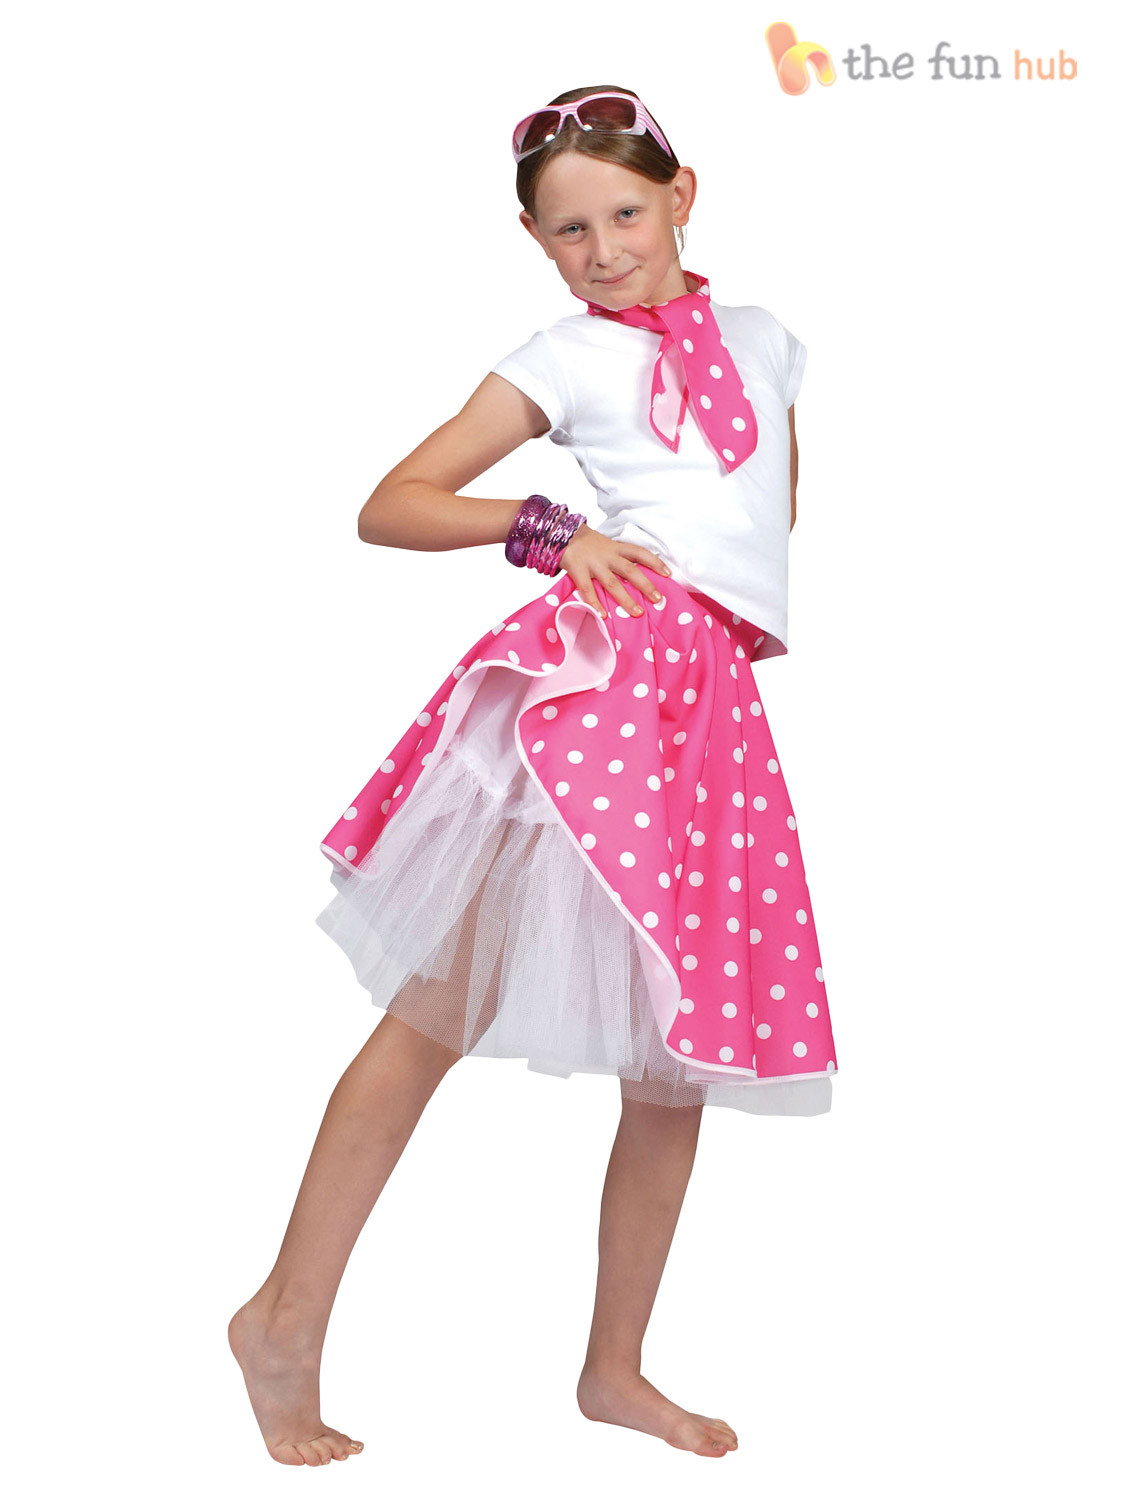 50S Fashion For Kids
 50s Rock N Roll Girls Fancy Dress 1950s Jazz Bopper Kids